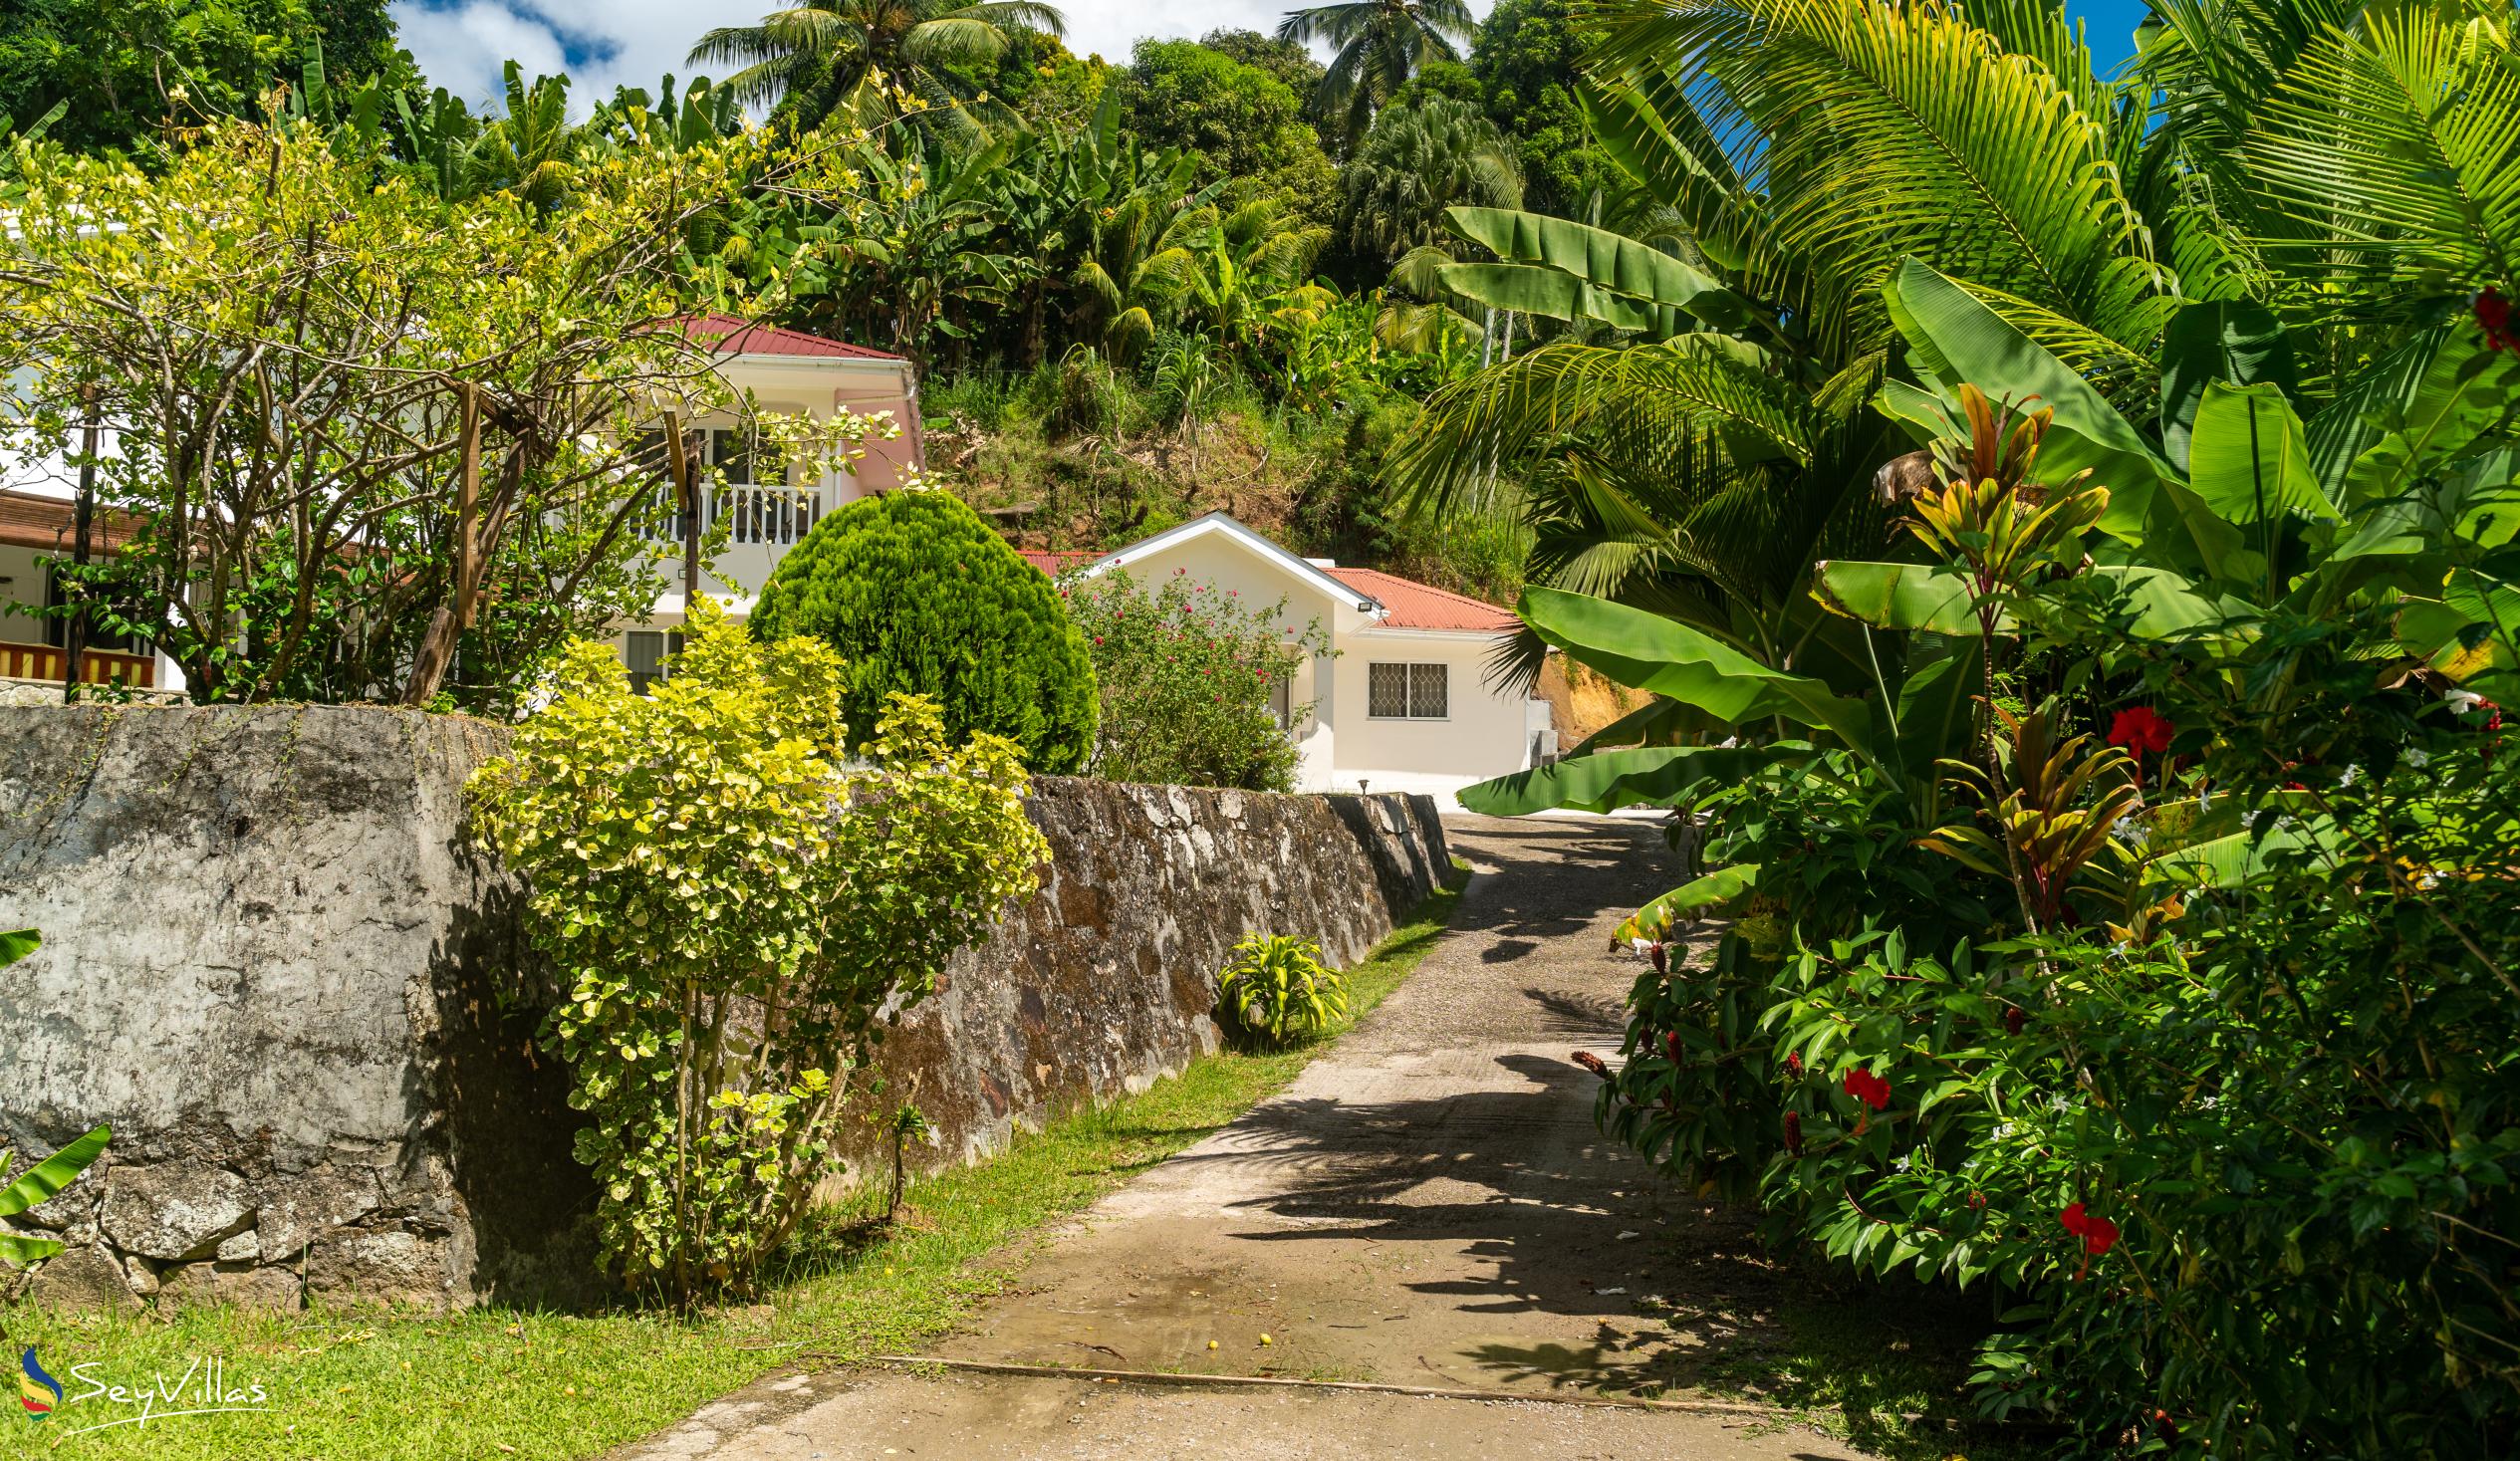 Photo 12: Paul's Residence - Outdoor area - Mahé (Seychelles)